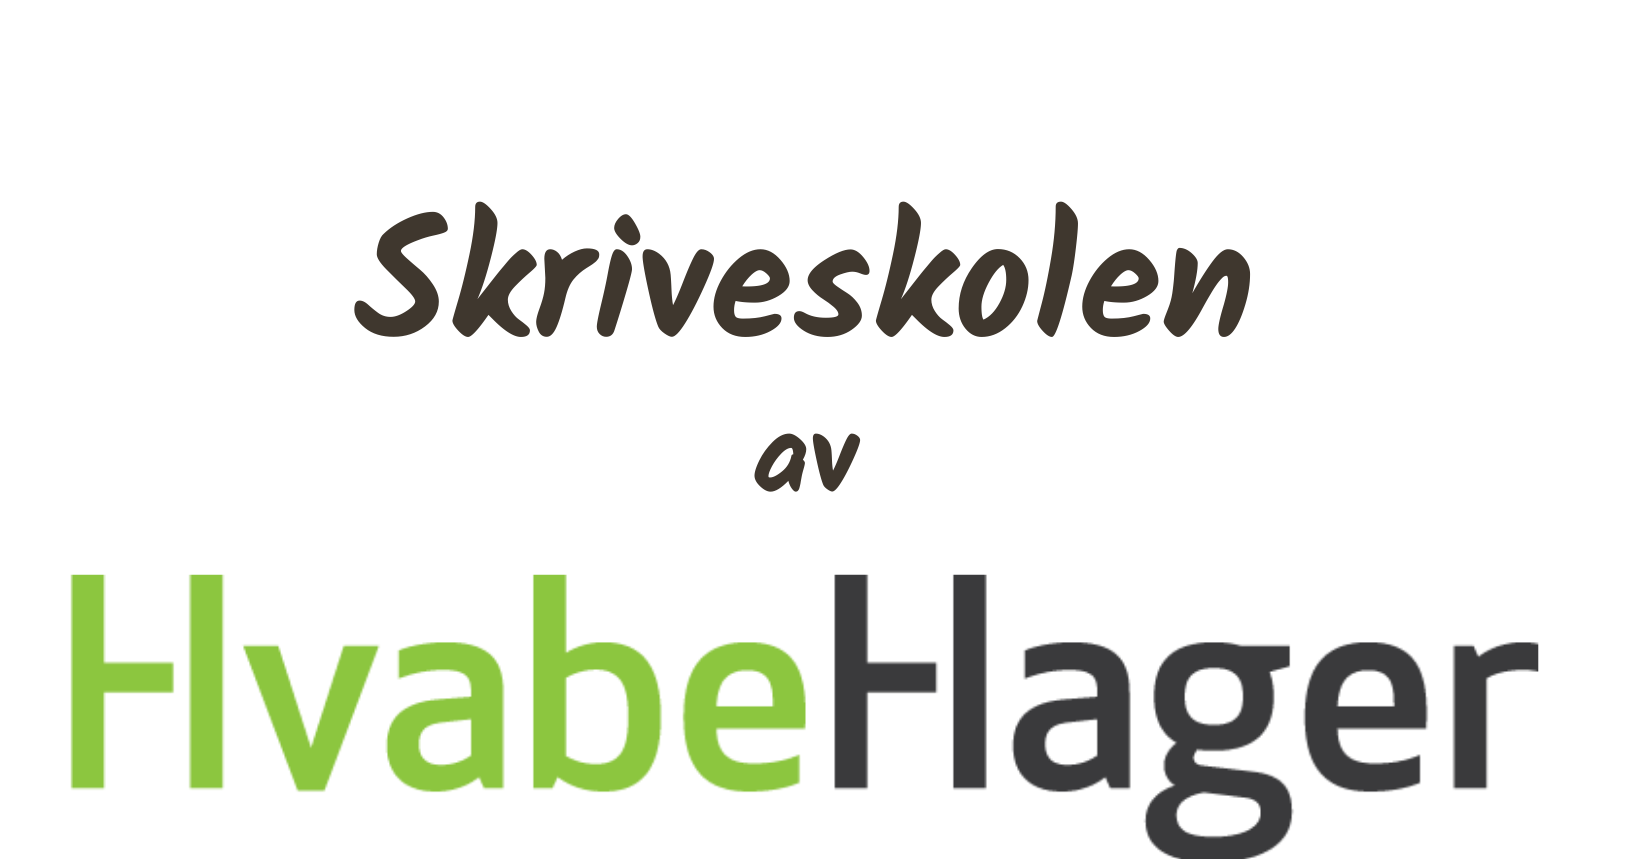 Skriveskolen av HvabeHager logo 1